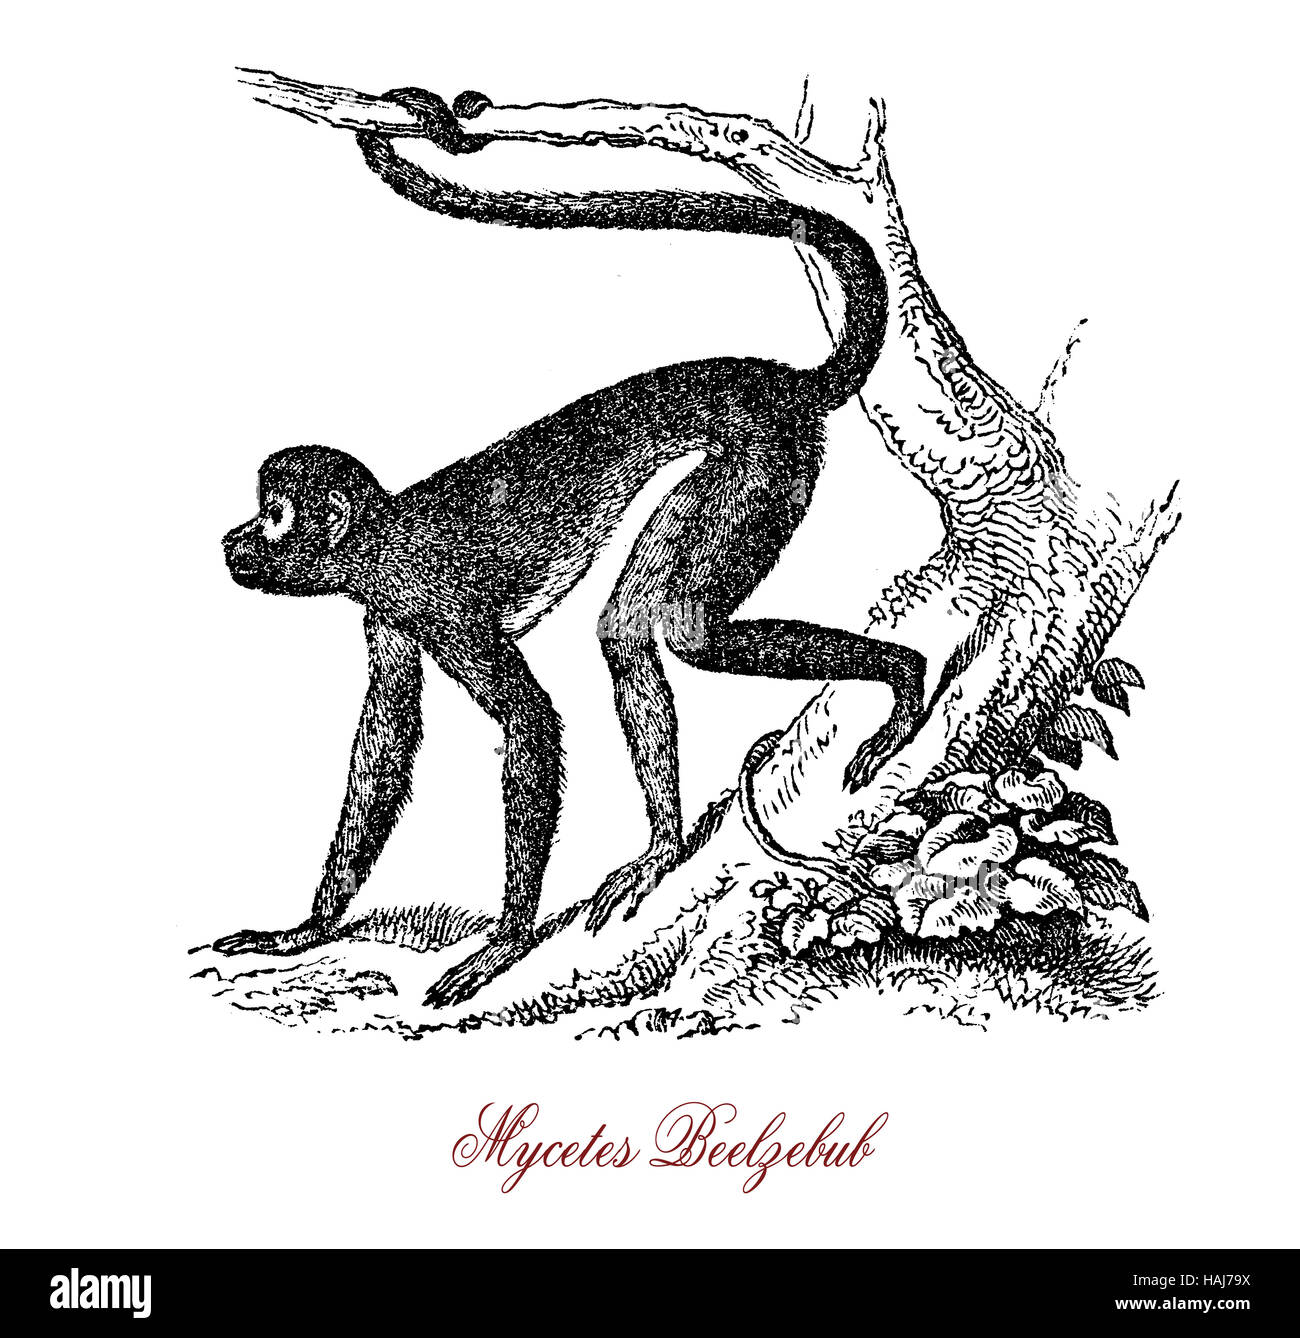 Predicador mono o Micetos Belcebú es nativa de Africa, chats y aullidos en imitación de los púlpitos con una voz resonante como un tambor Foto de stock